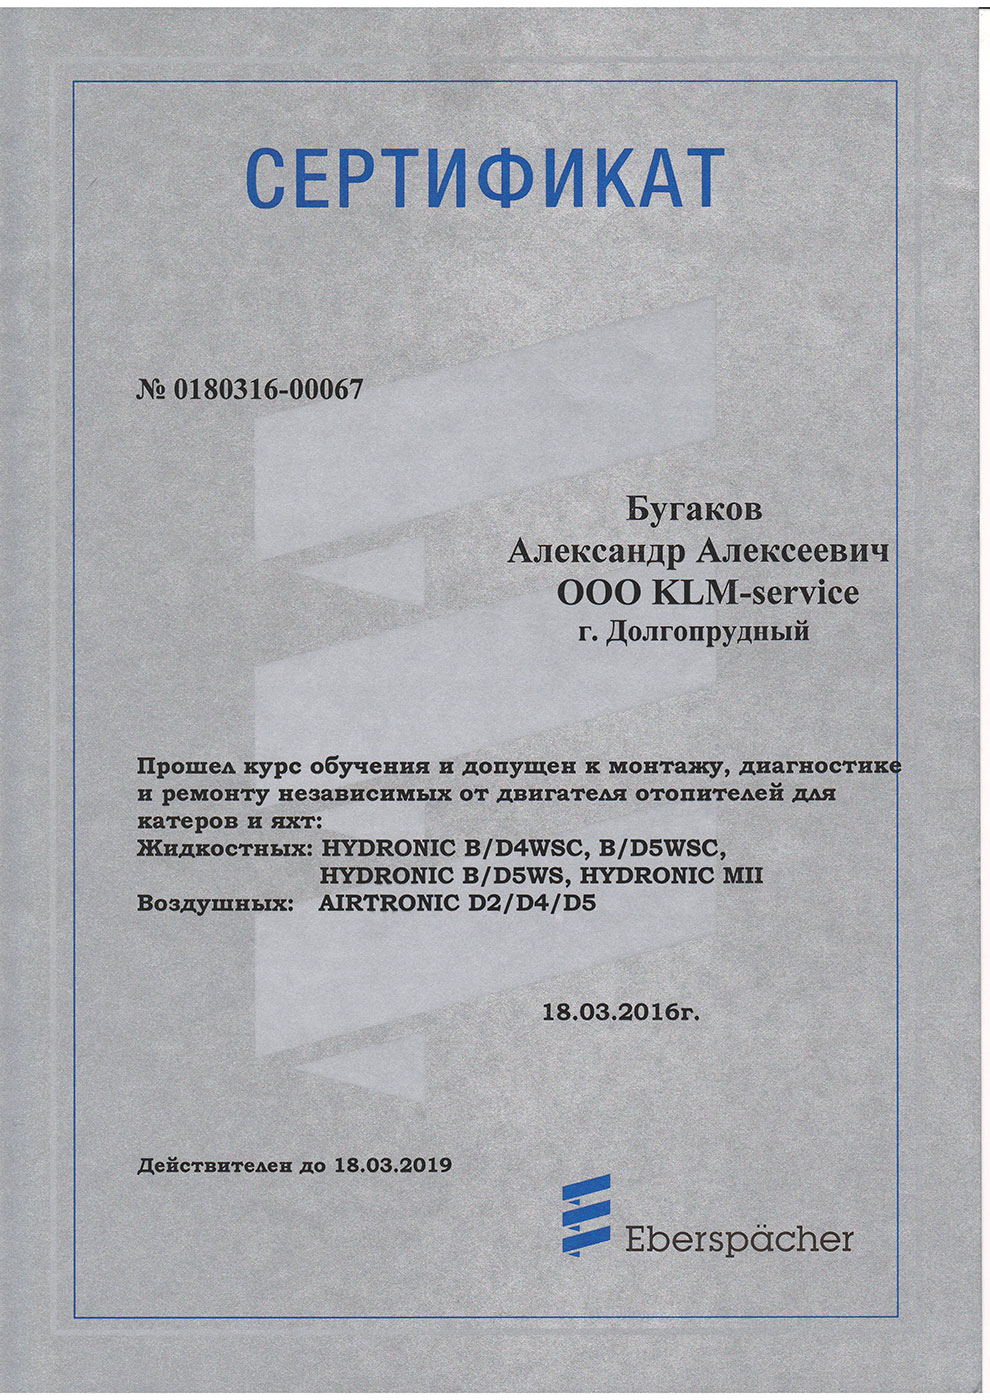 Сертификат дилера Eberspacher